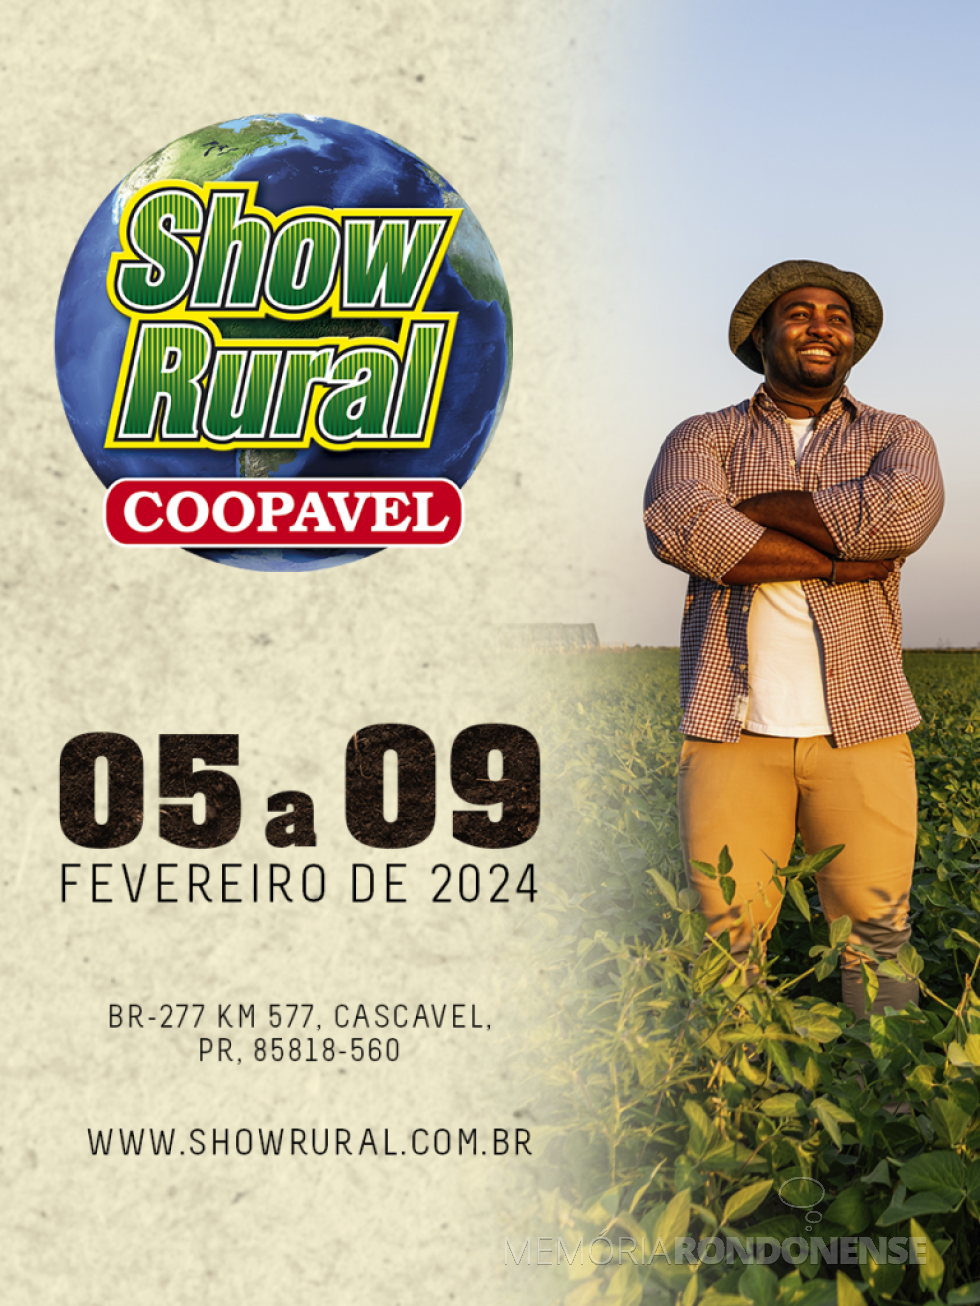 || Cartaz convite para a feira Show Rural 2024, na cidade de Cascavel.
Imagem: Acervo Coopavel - FOTO 23 -